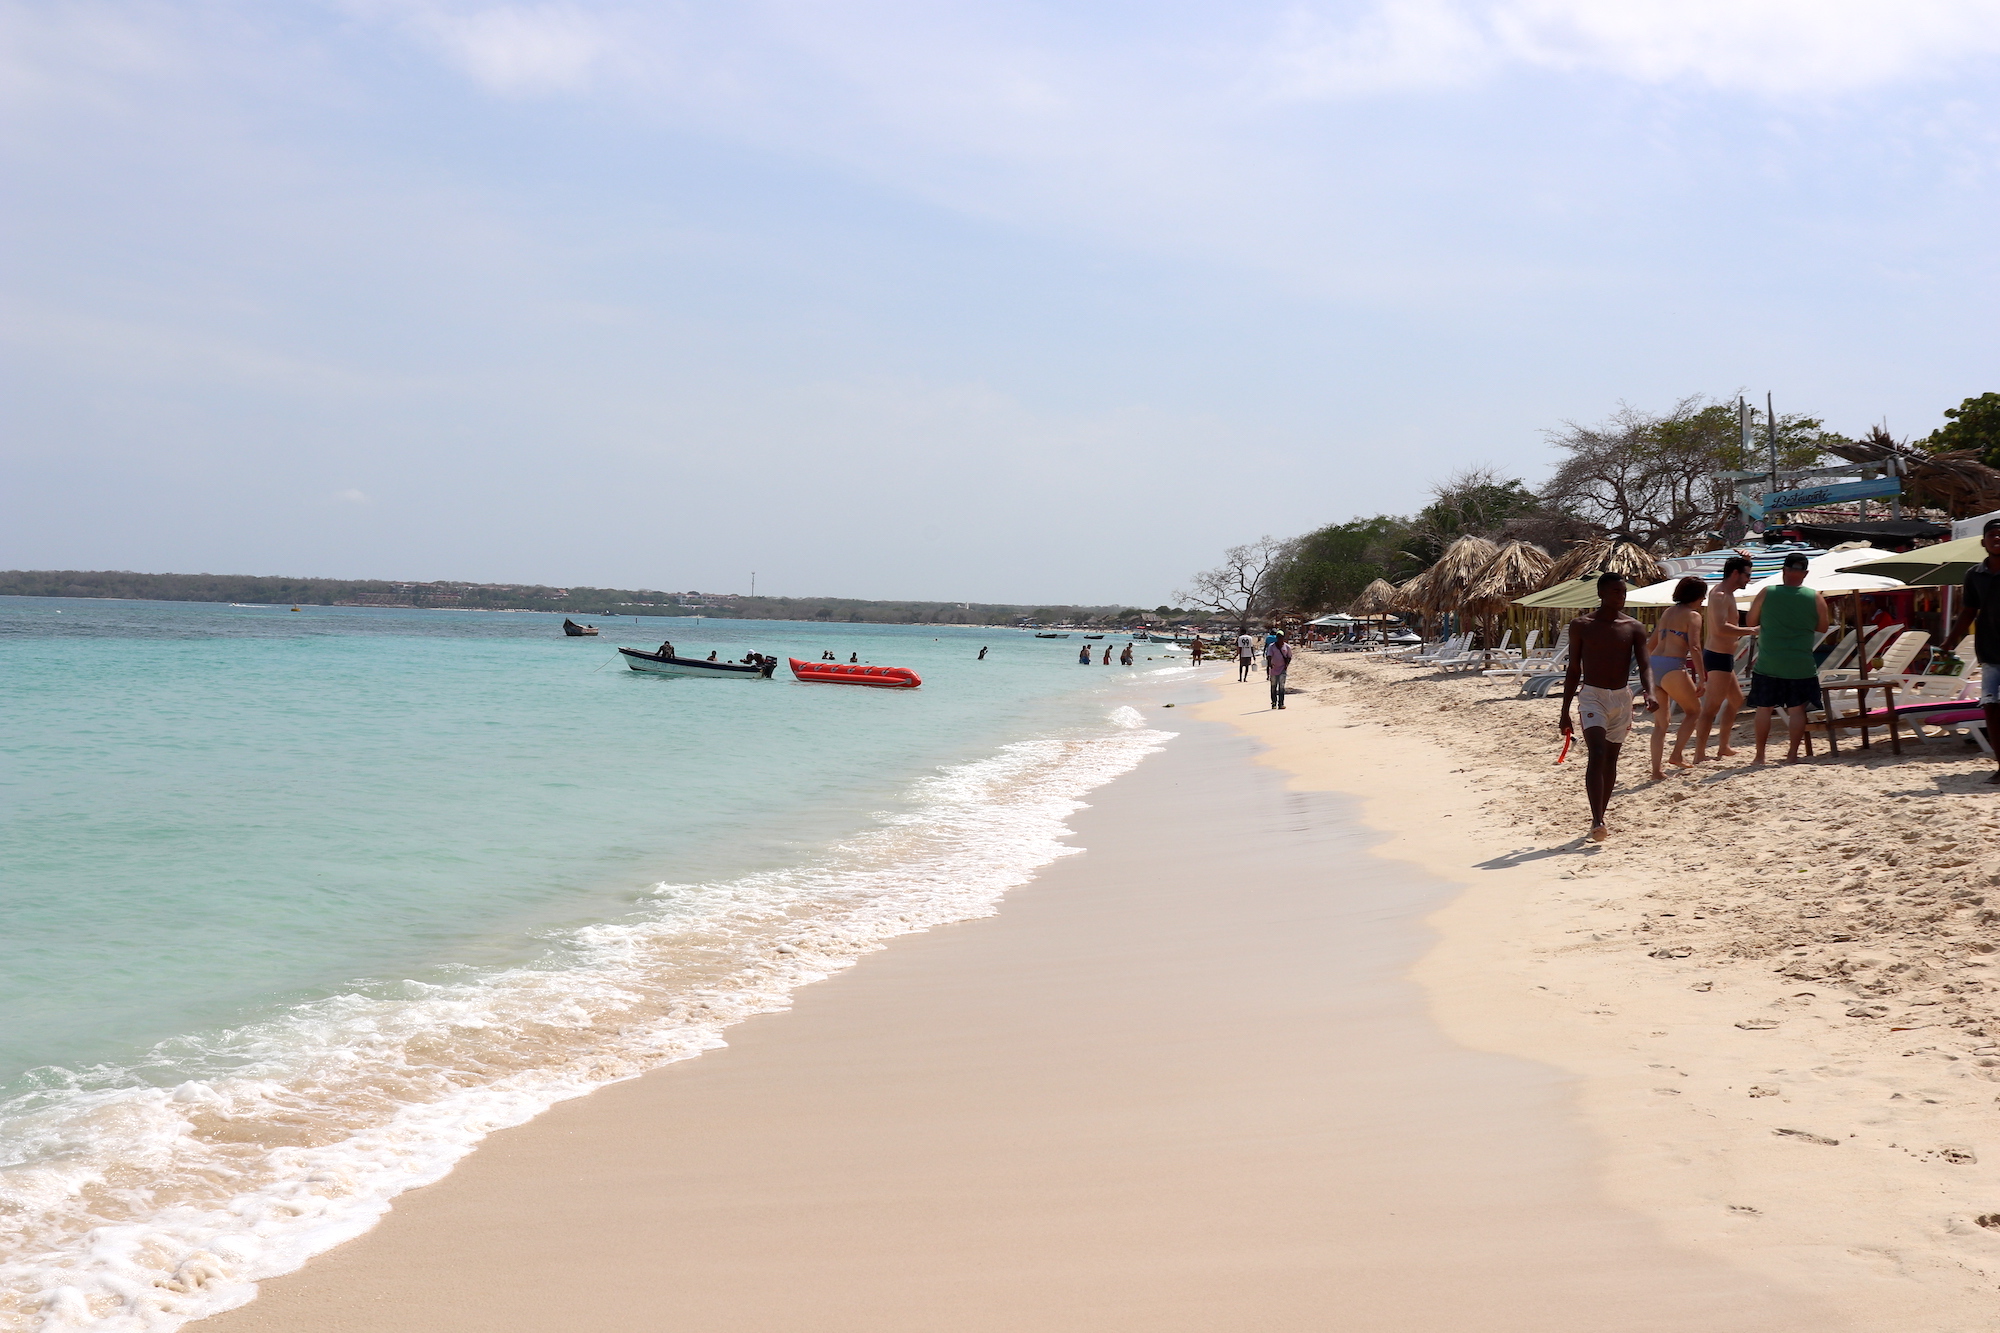 The white sand beach of Baru Island